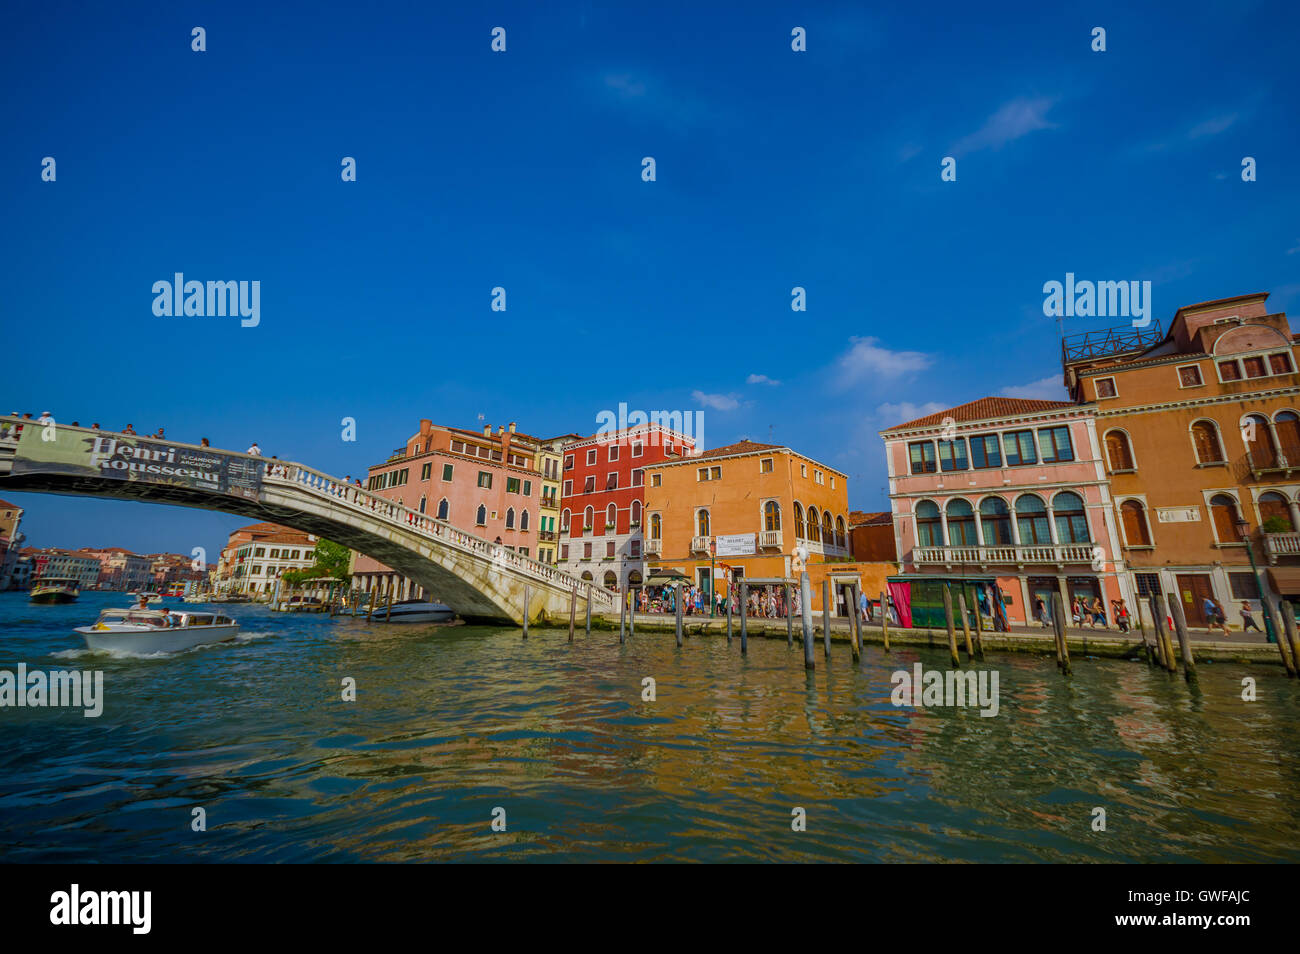 Venedig, Italien - 18. Juni 2015: Touristen in Venedig, Menschen, die über eine große Brücke in einen schönen sonnigen Tag Stockfoto